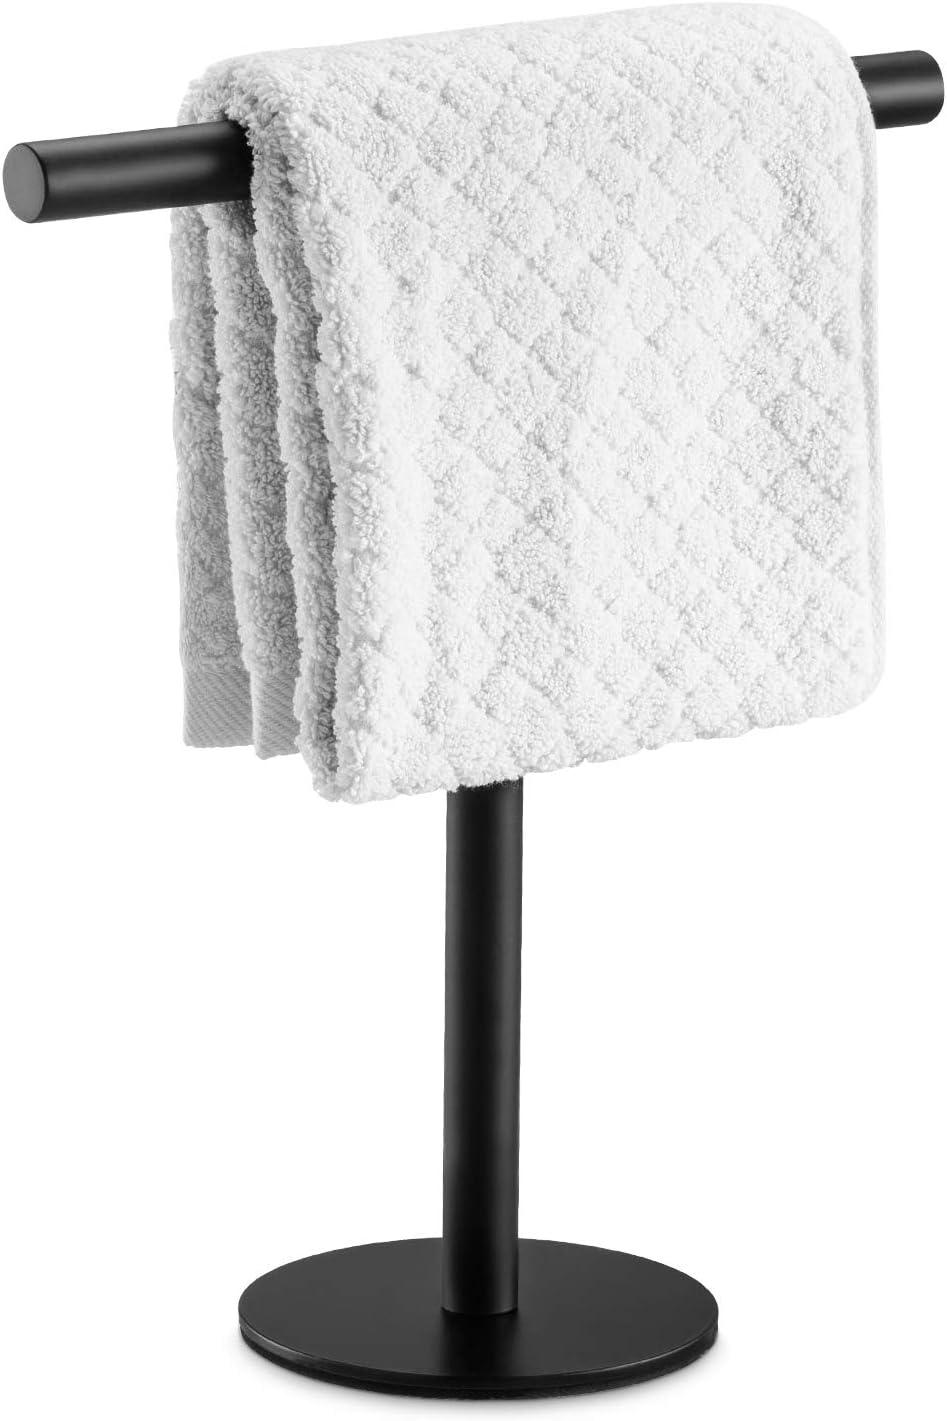 Soporte para toallas de mano de baño de acero inoxidable SUS304